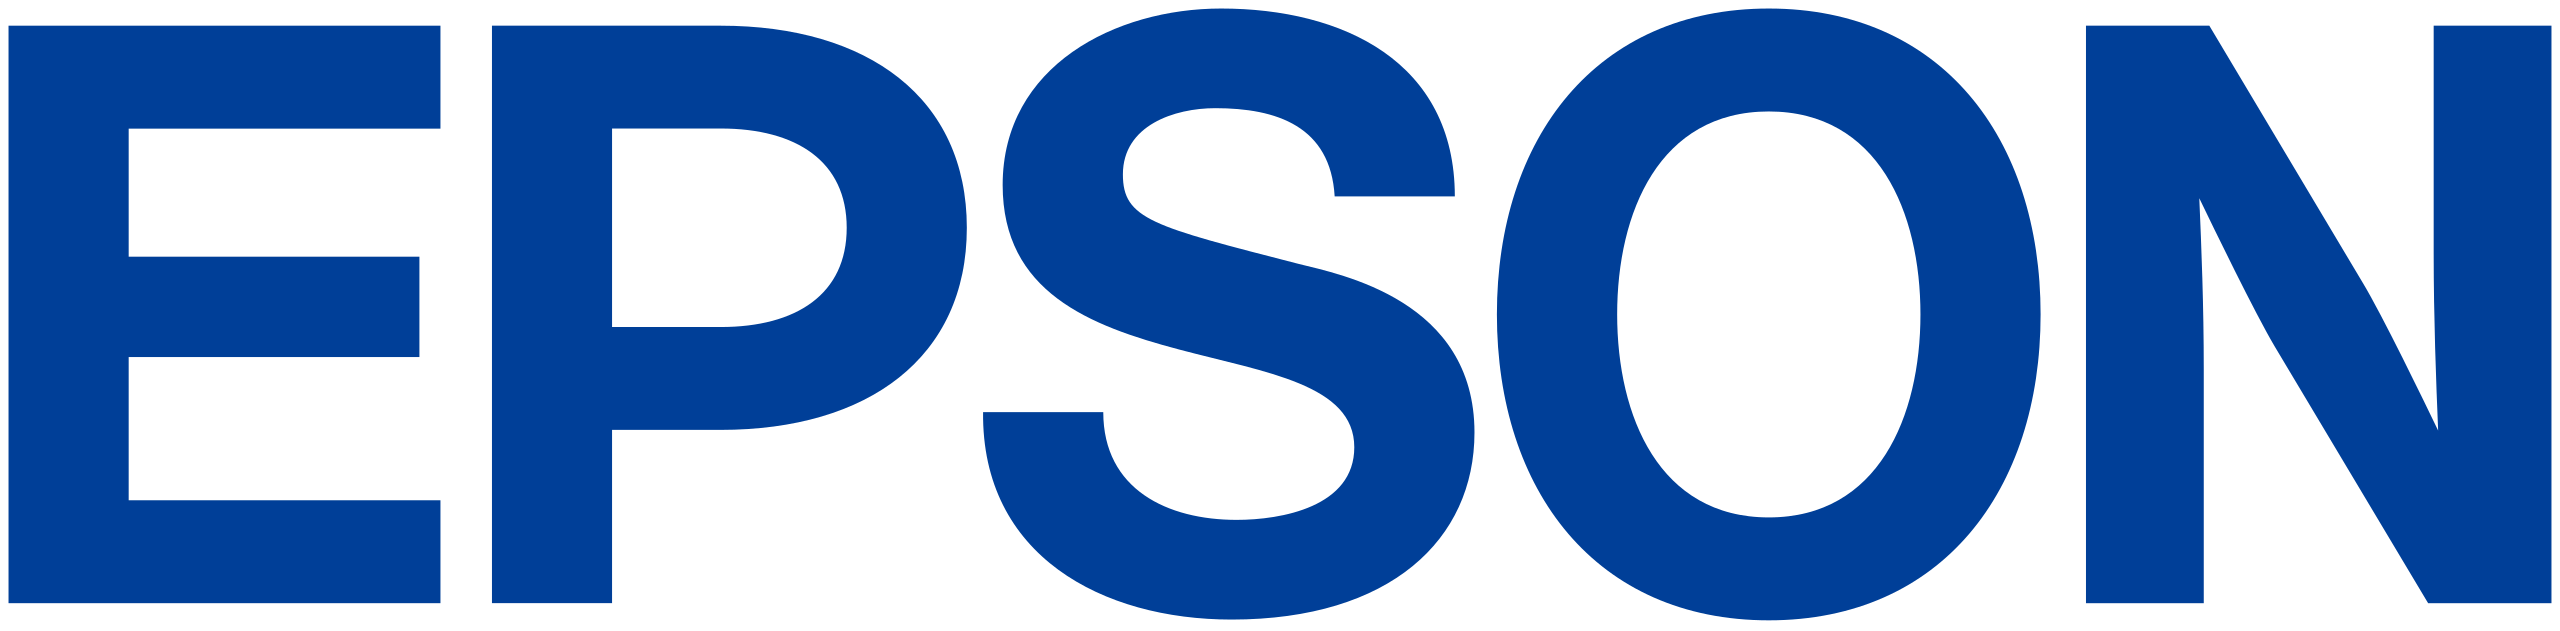 2560px Epson logo.svg - Home Comeros